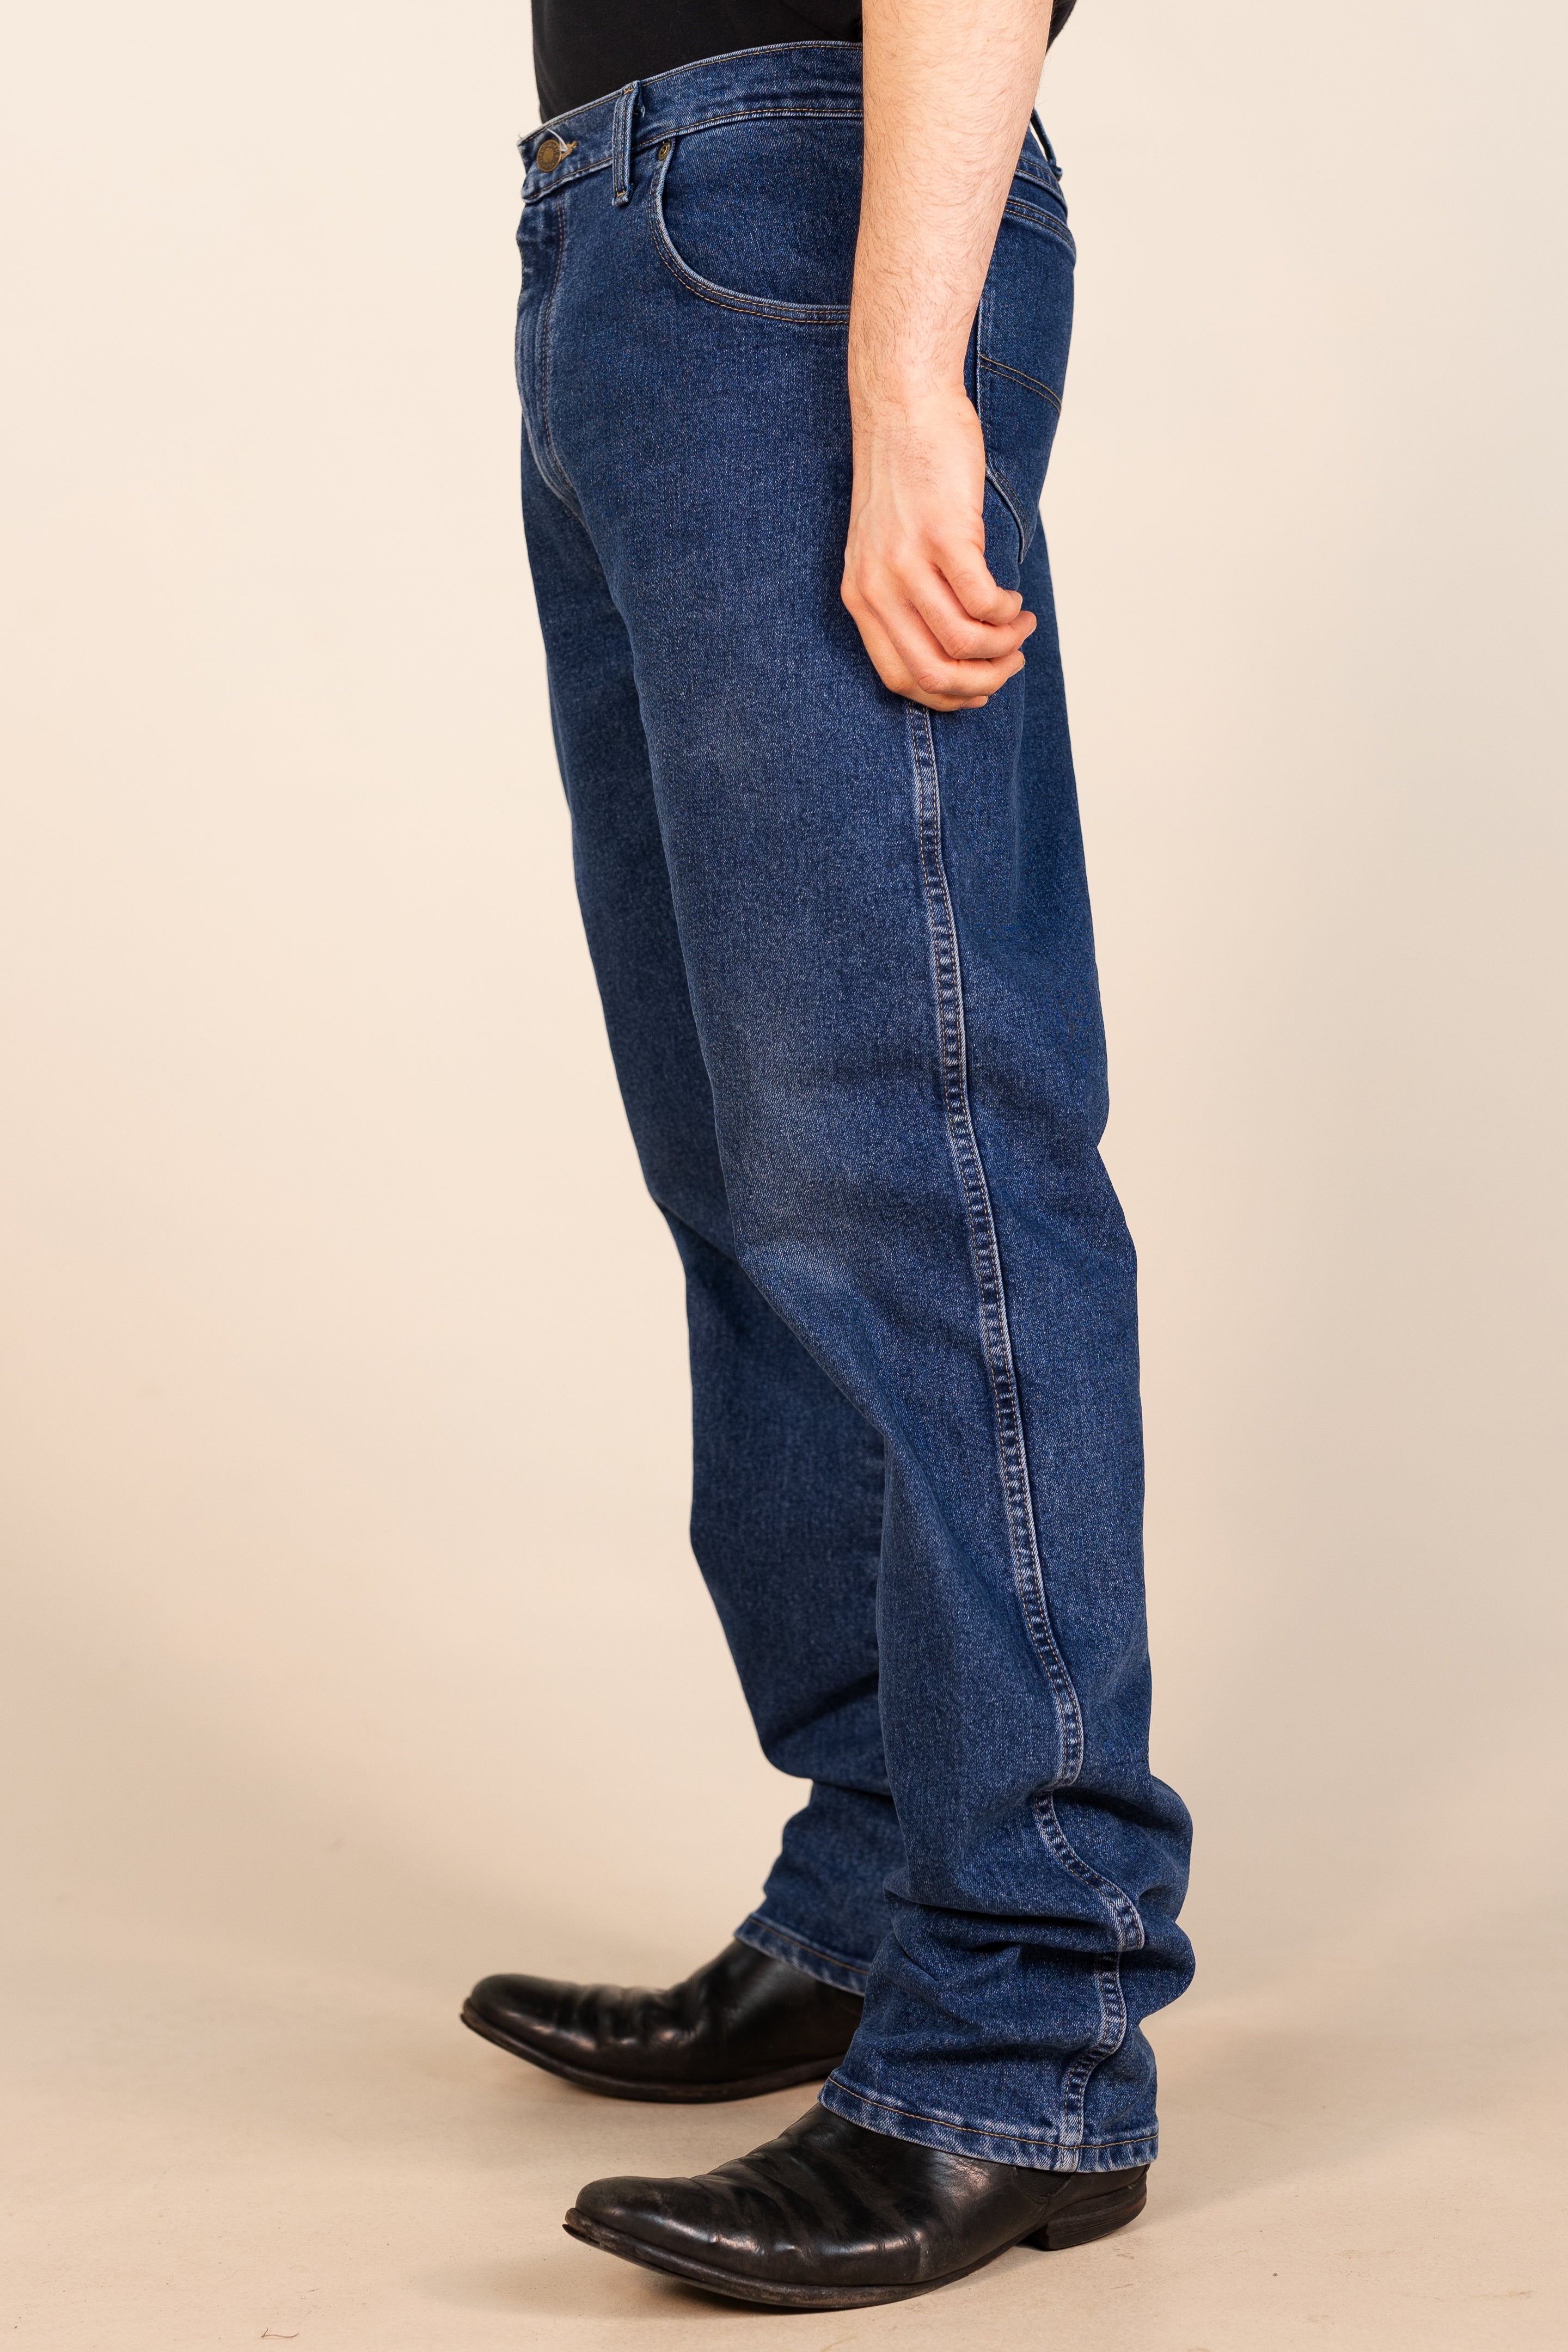 Wrangler 'Regular' Fit Jeans